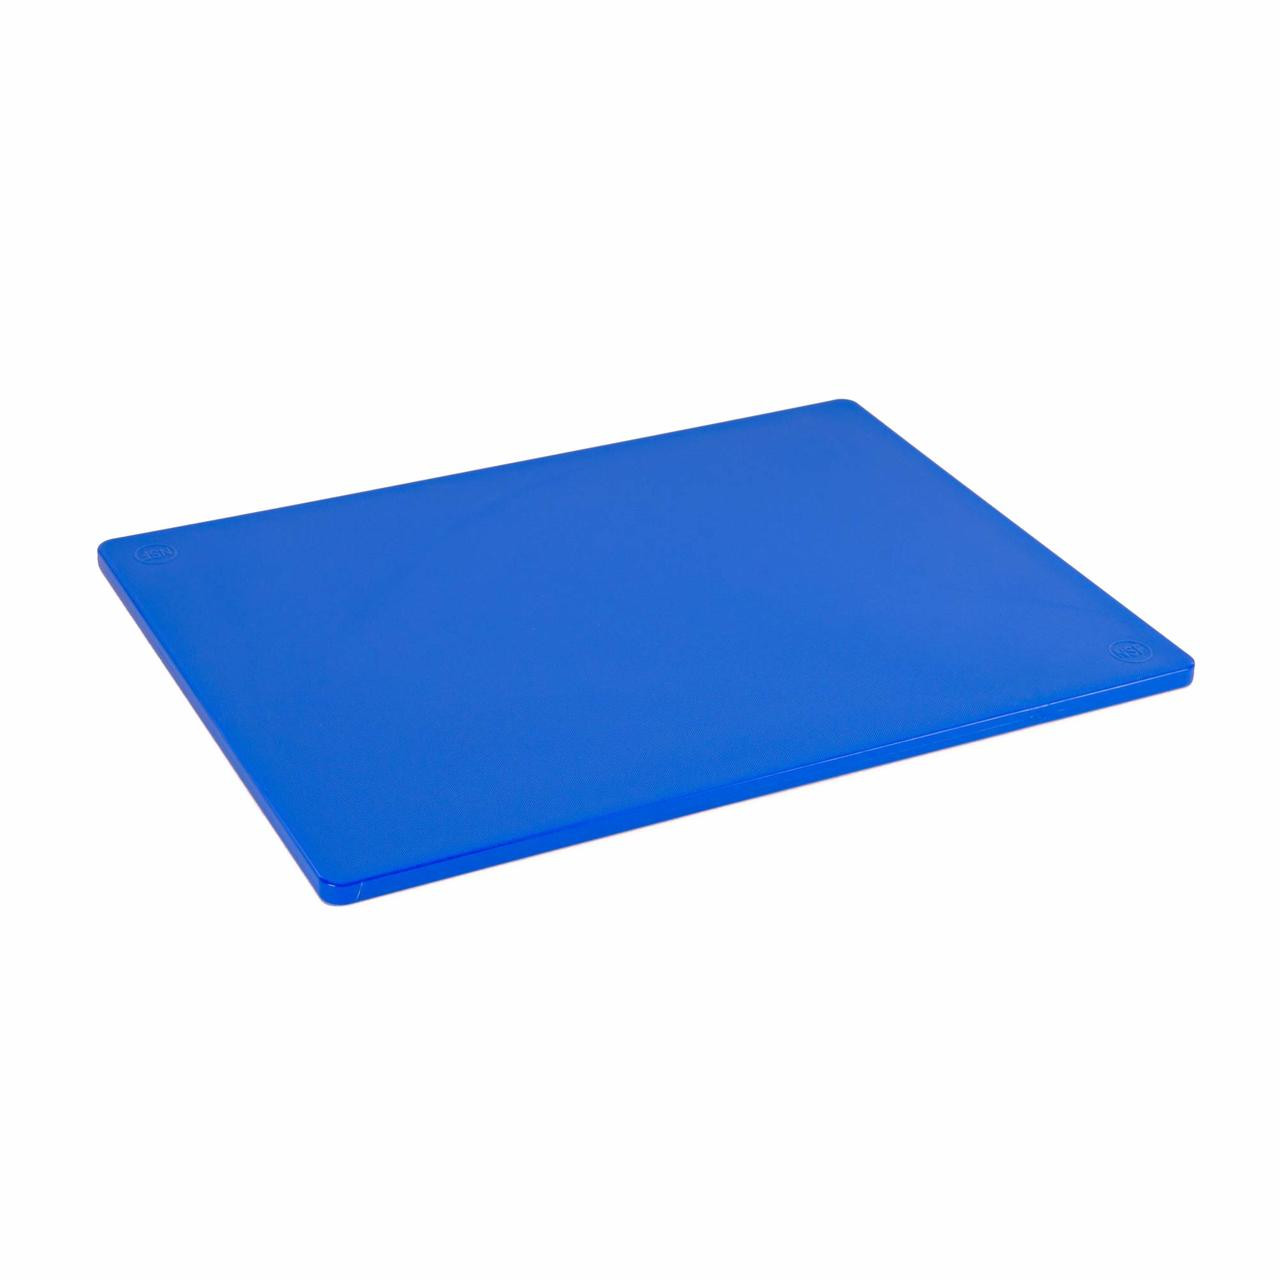 Choice 18 x 12 x 1/2 Blue Polyethylene Cutting Board